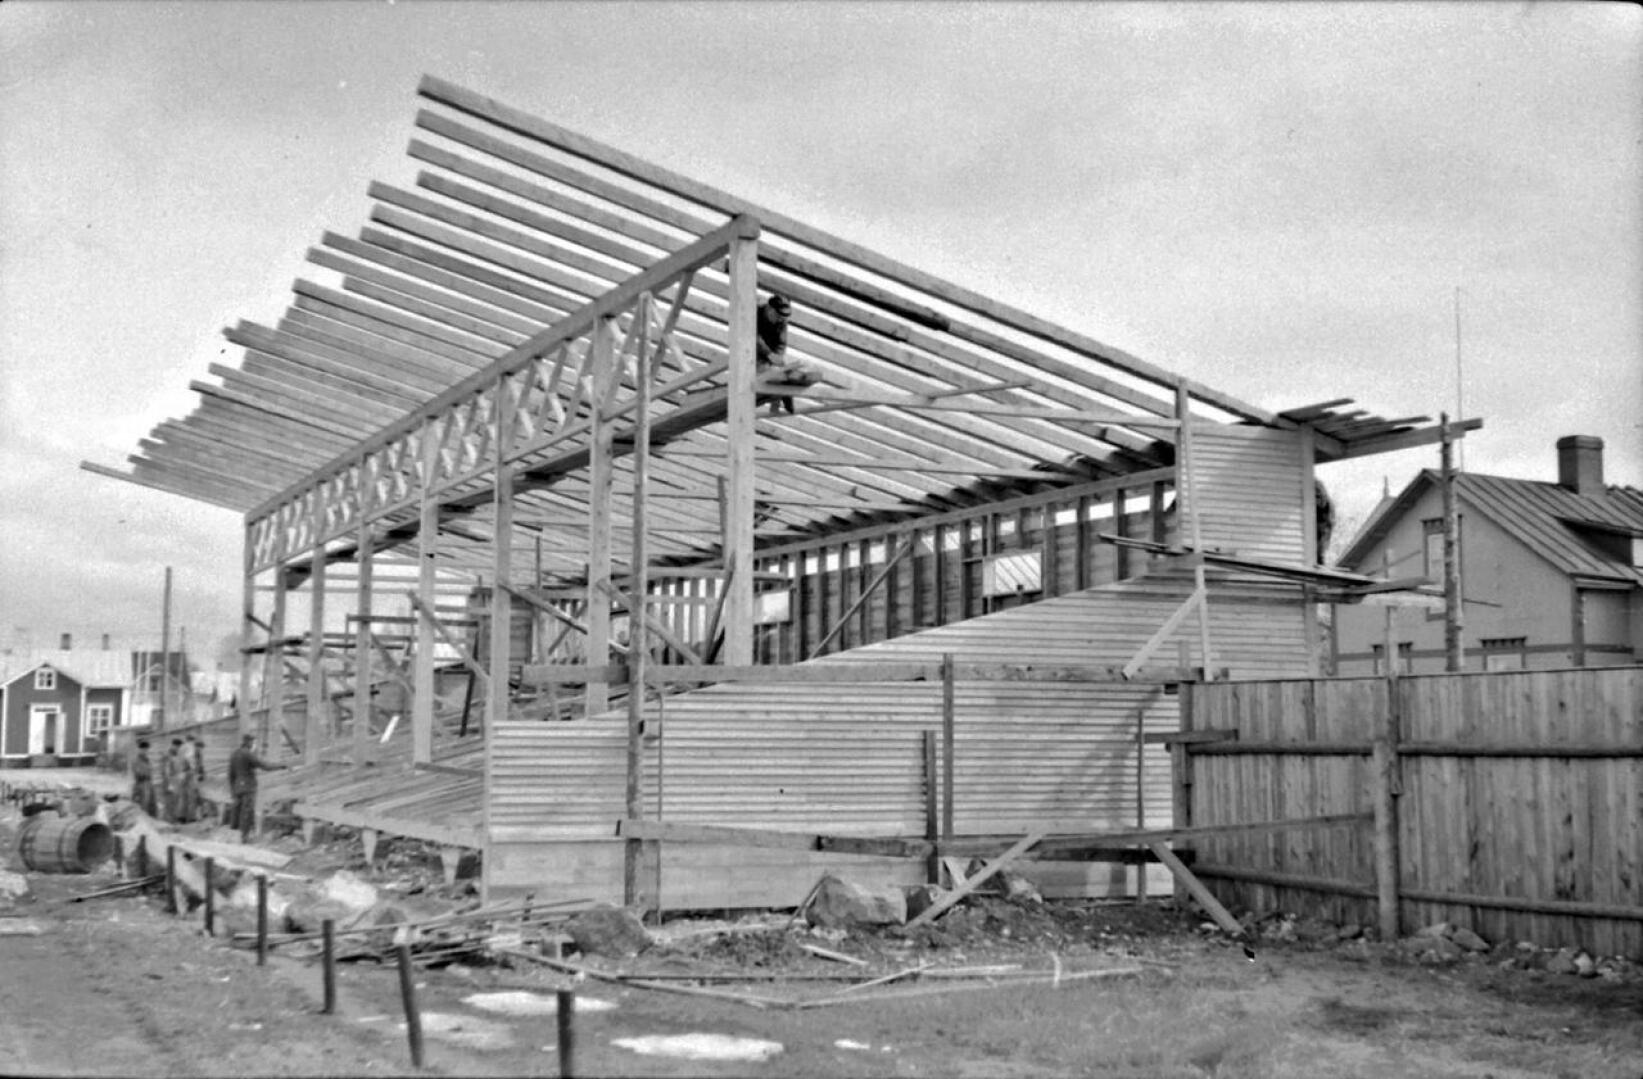 Kokkolan keskuskentän puukatsomo rakenteilla.Leenalan alueella sijaitseva kenttä vihittiin käyttöön 1935. Kentälle valmistui seuraavana vuonna katettu 350 hengen puukatsomo, joka tuhoutui tulipalossa 1974.